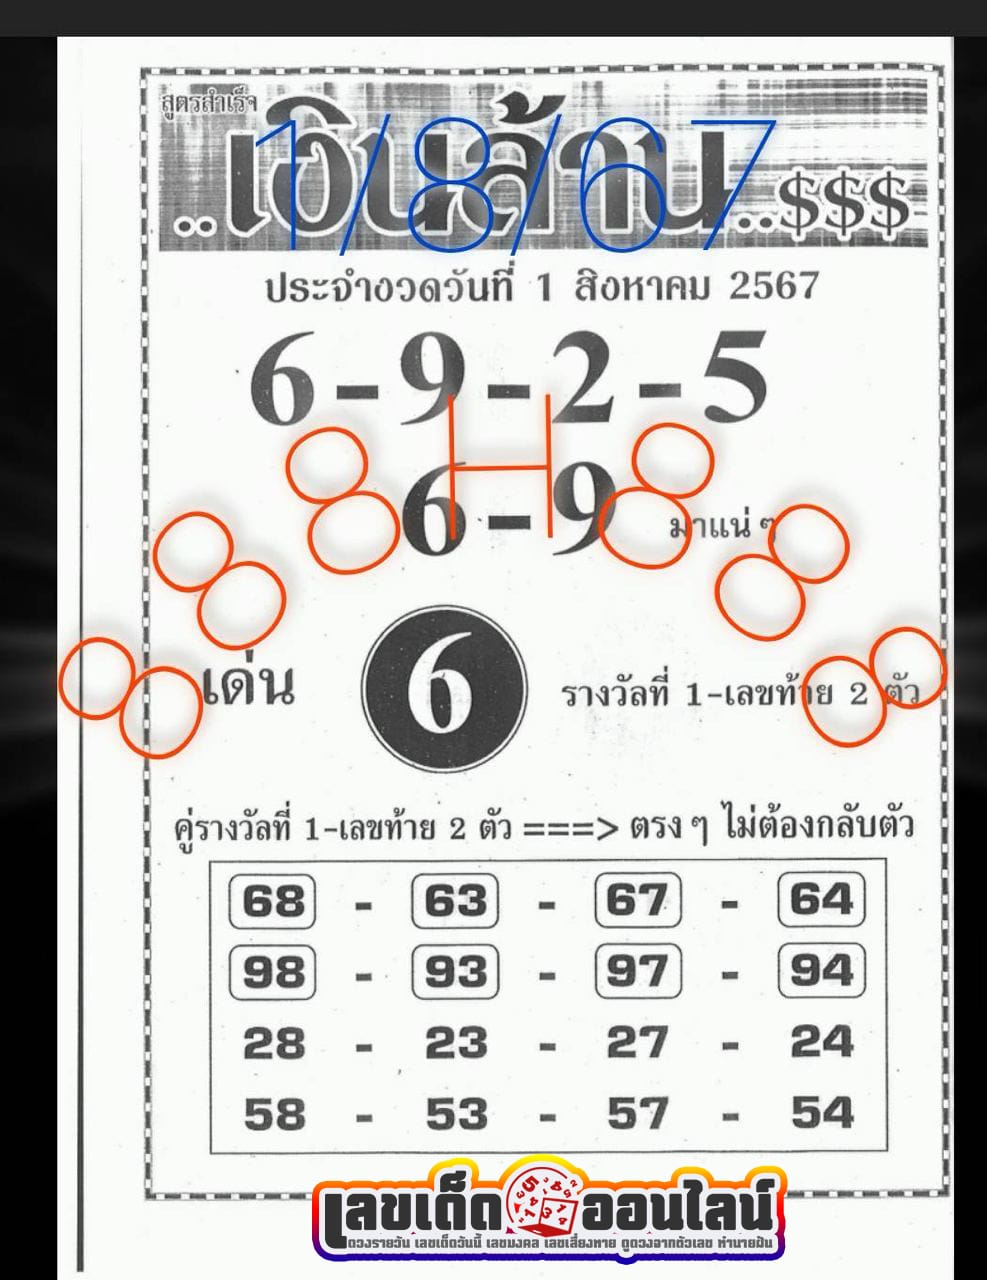 สูตรสำเร็จเงินล้าน 1 8 67 -"Formula for making a million baht 1 8 67"